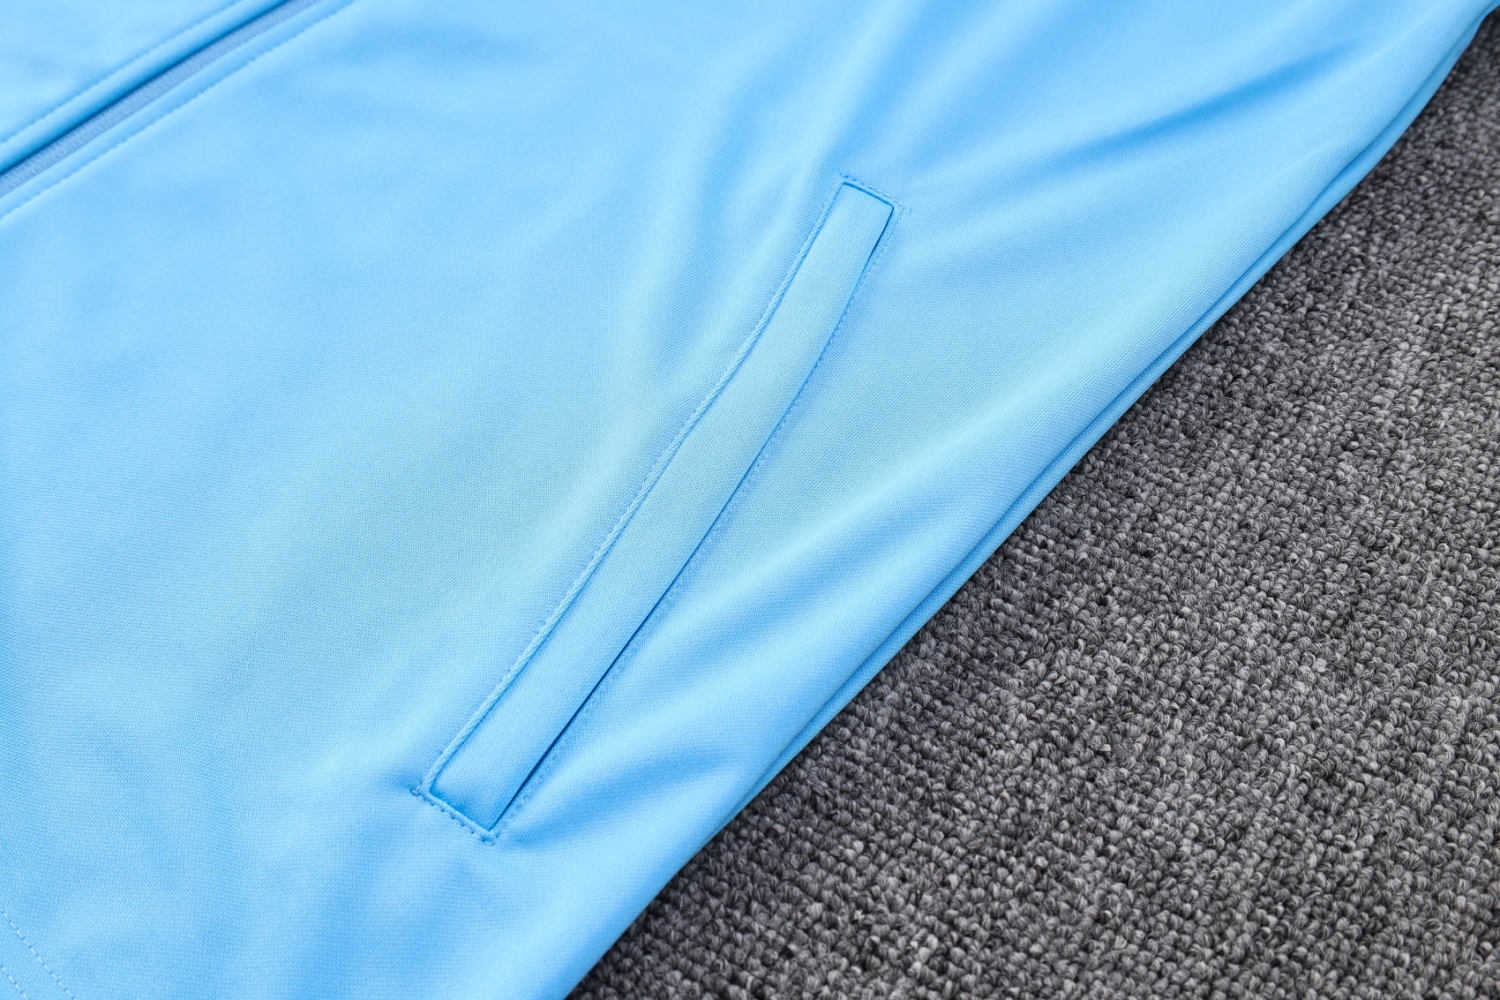 Argentina Soccer Jacket + Pants Replica Blue 2023 Mens